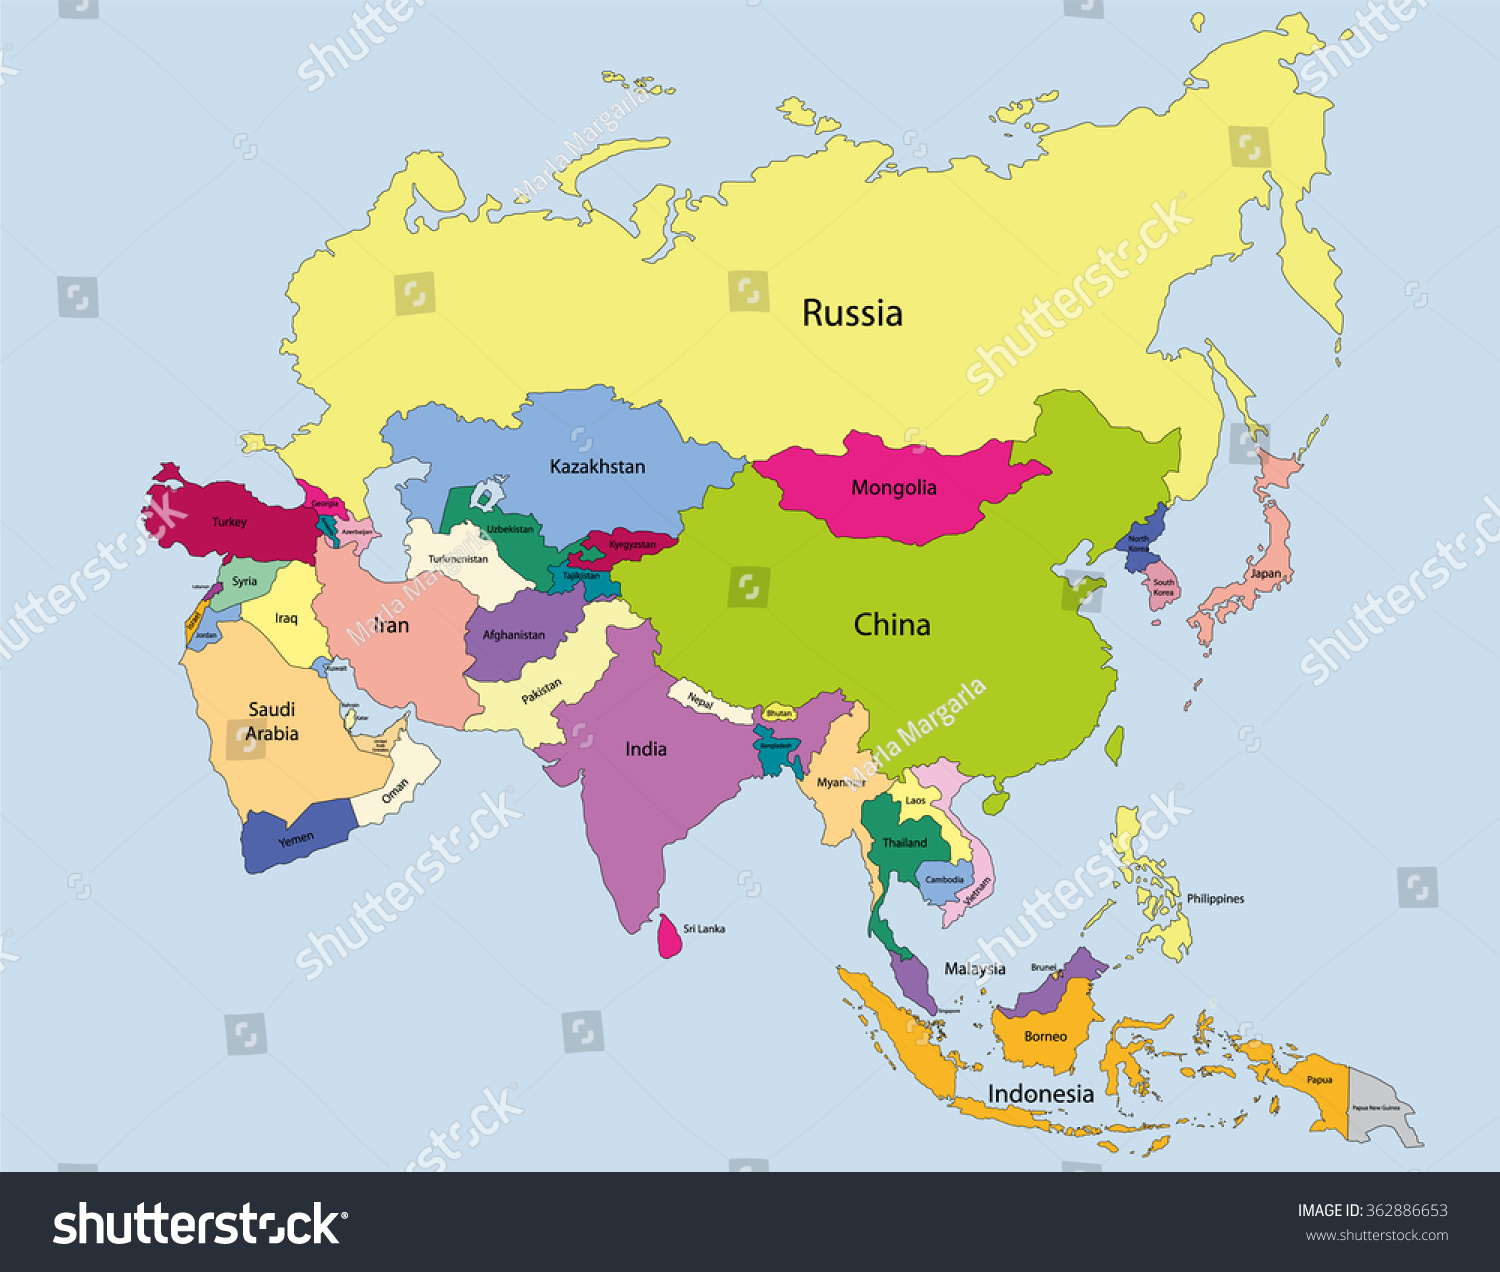 Asia asia cos. Политическая карта Азии. Карта Азии на русском языке со странами.